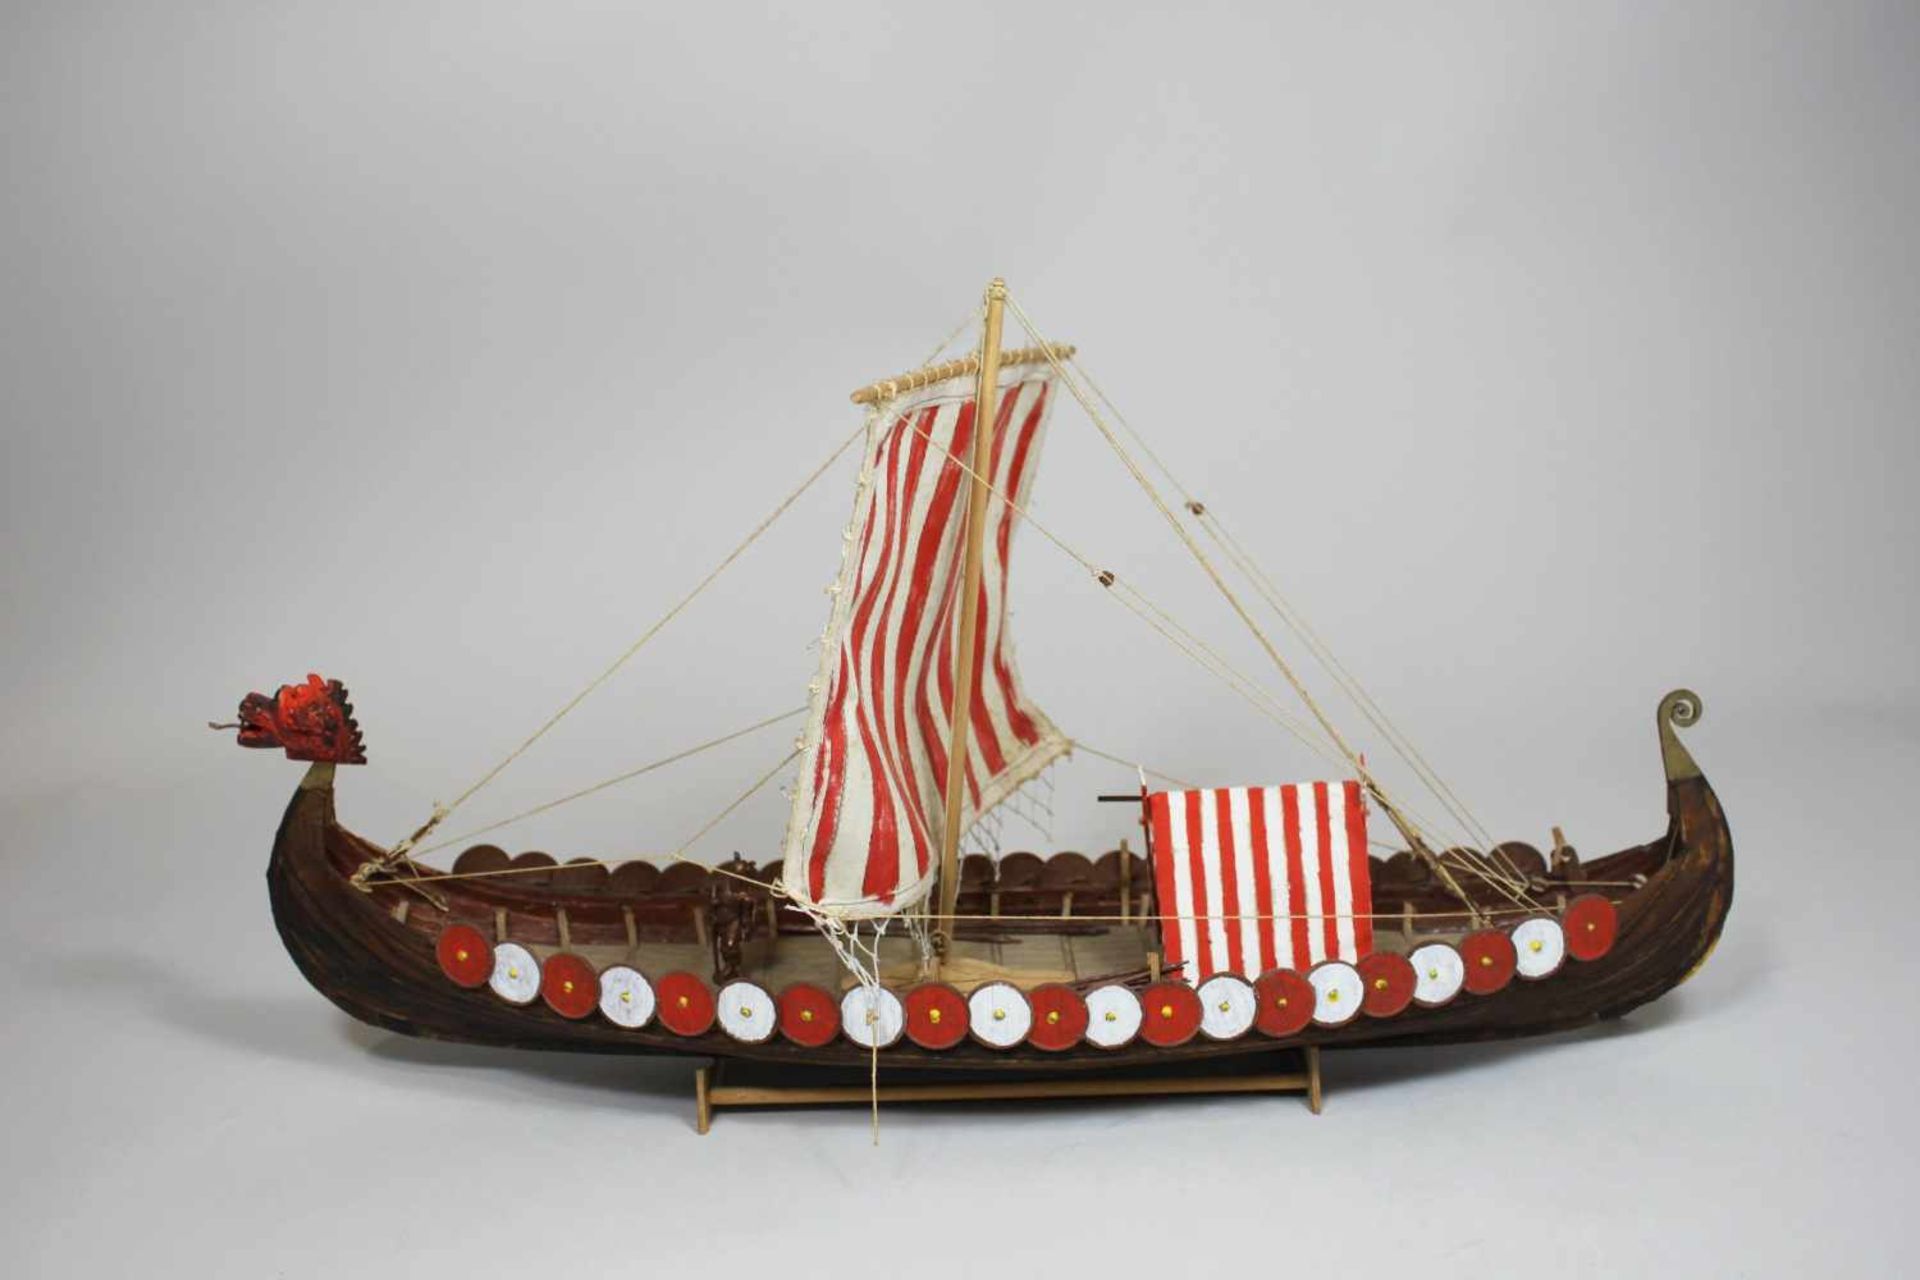 Modellschiff No. 43, Holz, teilweise farbig gefasst, Maßen ca.: 40 x 24 cm. Aus einer Privatsammlung